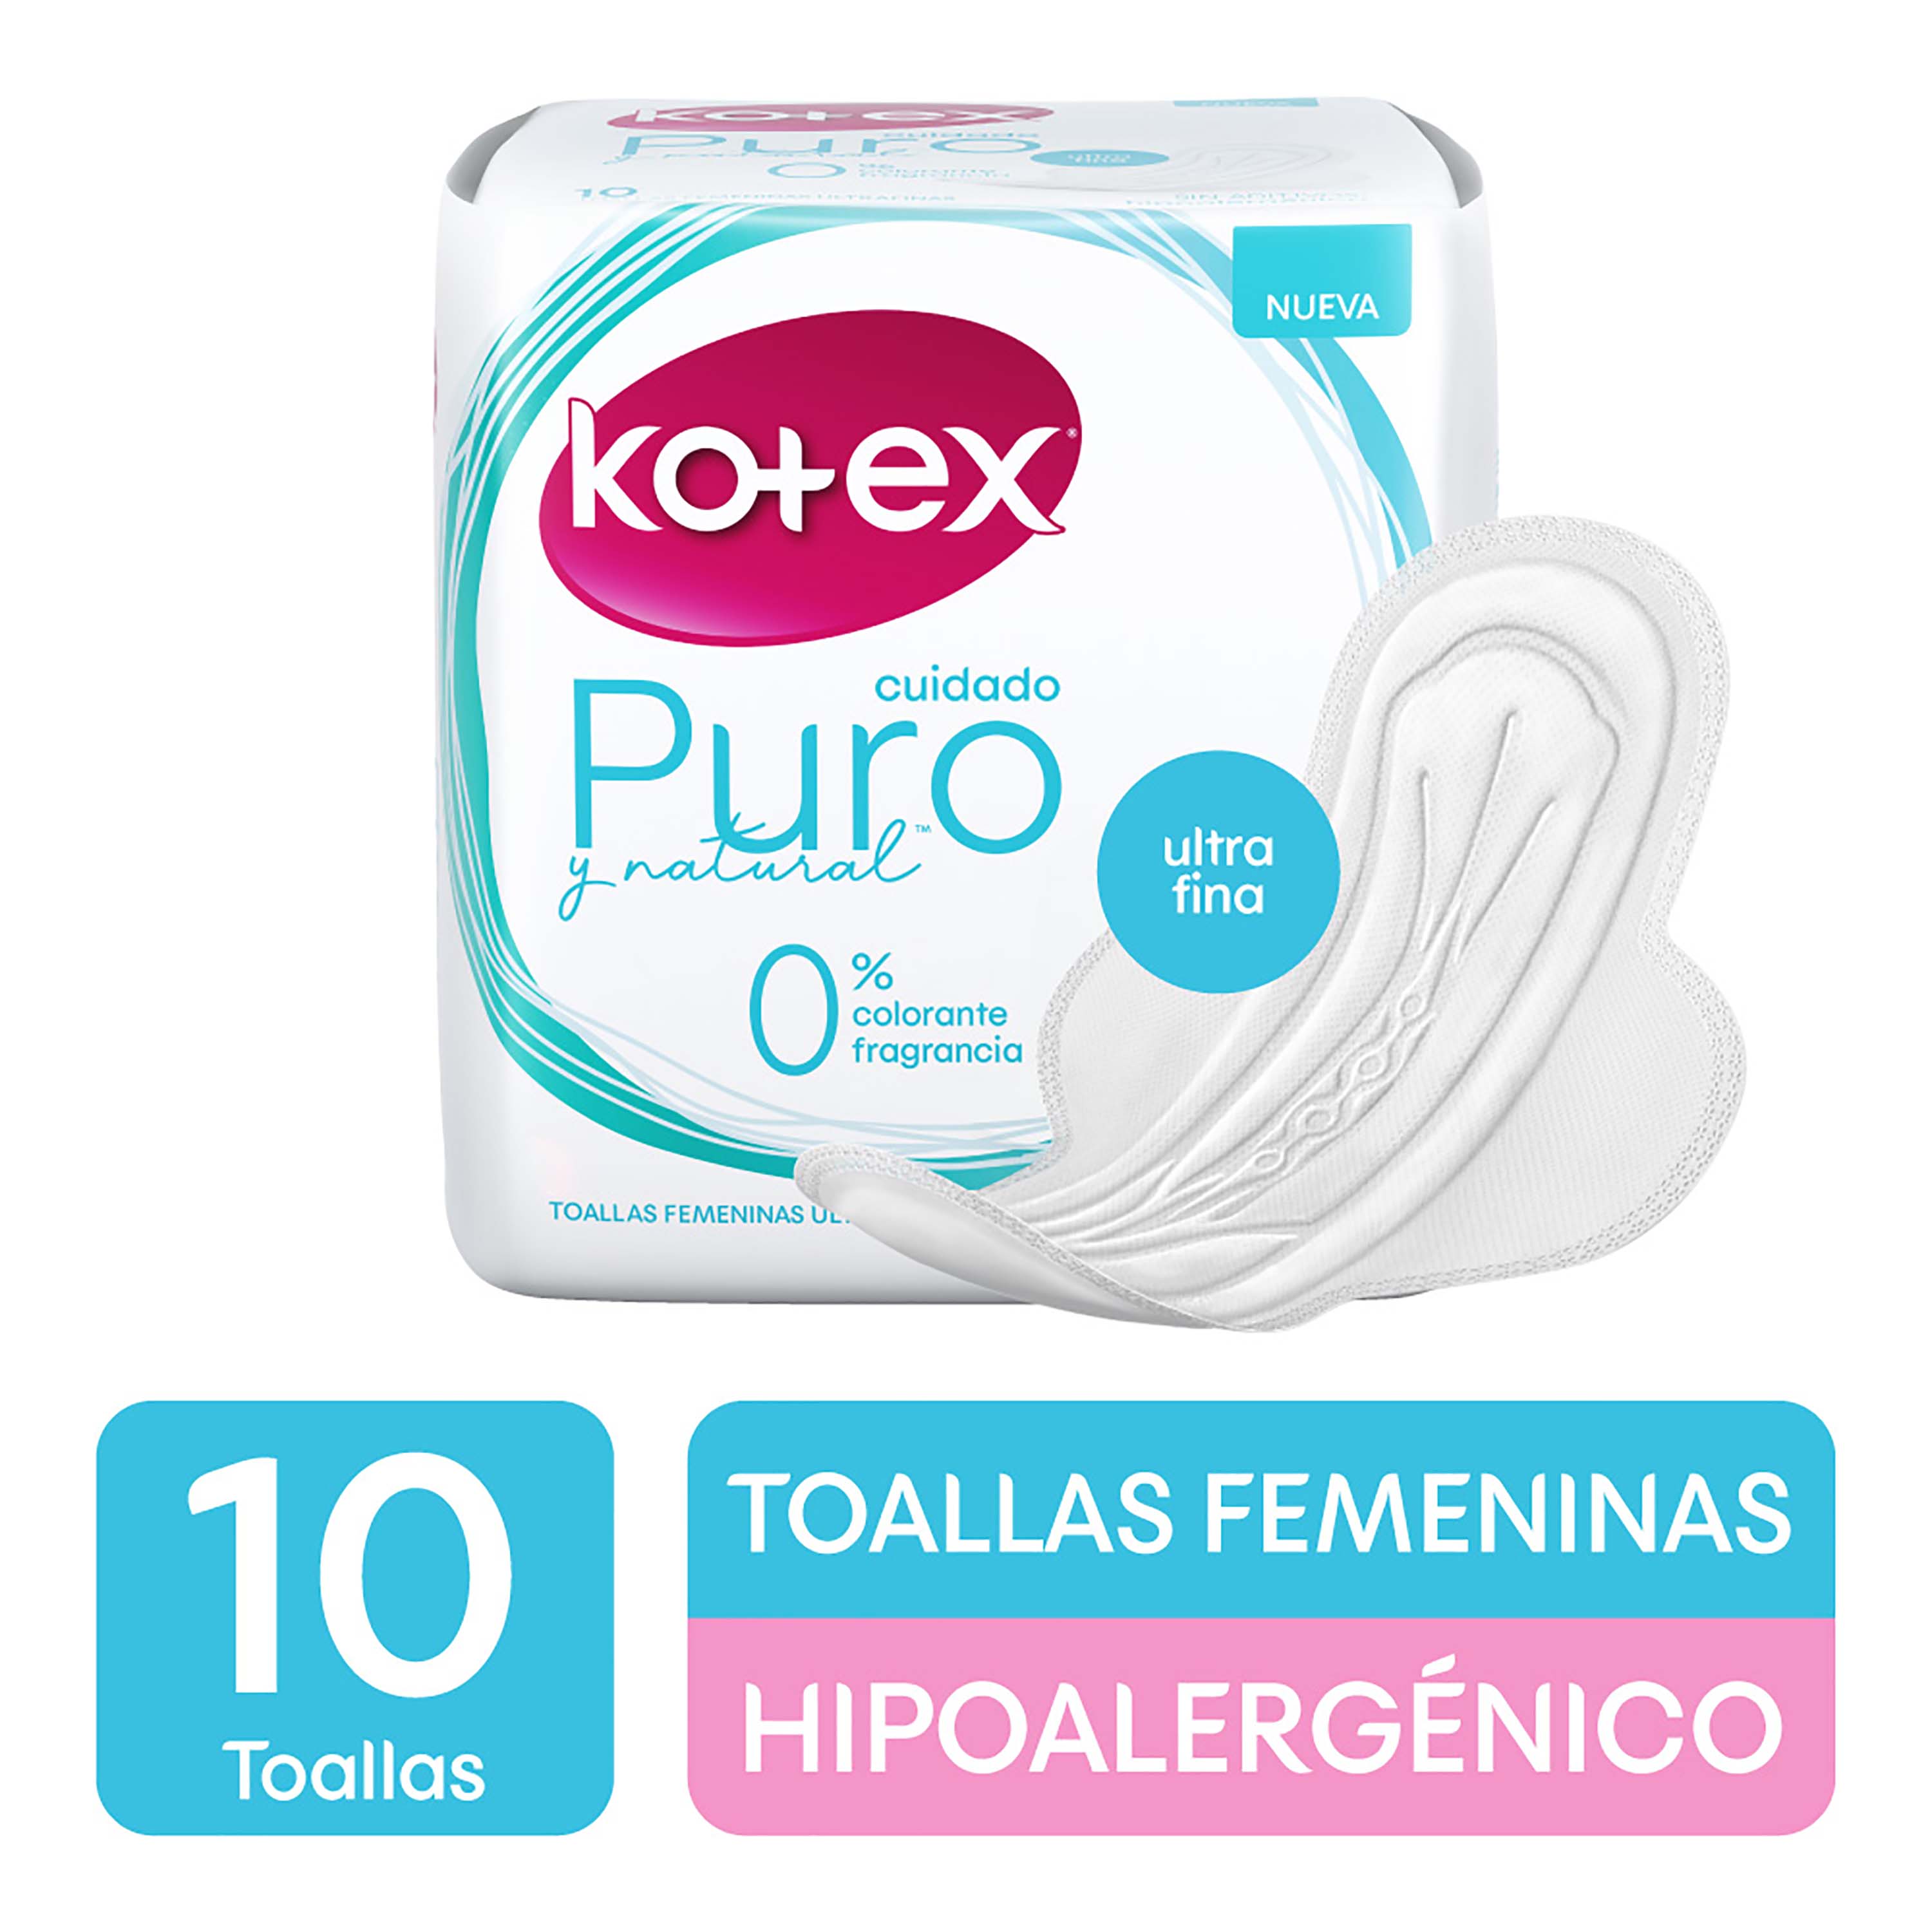 Toallas-Femeninas-Marca-Kotex-Puro-Y-Natural-Ultra-Fina-Hipoalarg-nico-10Uds-1-10540